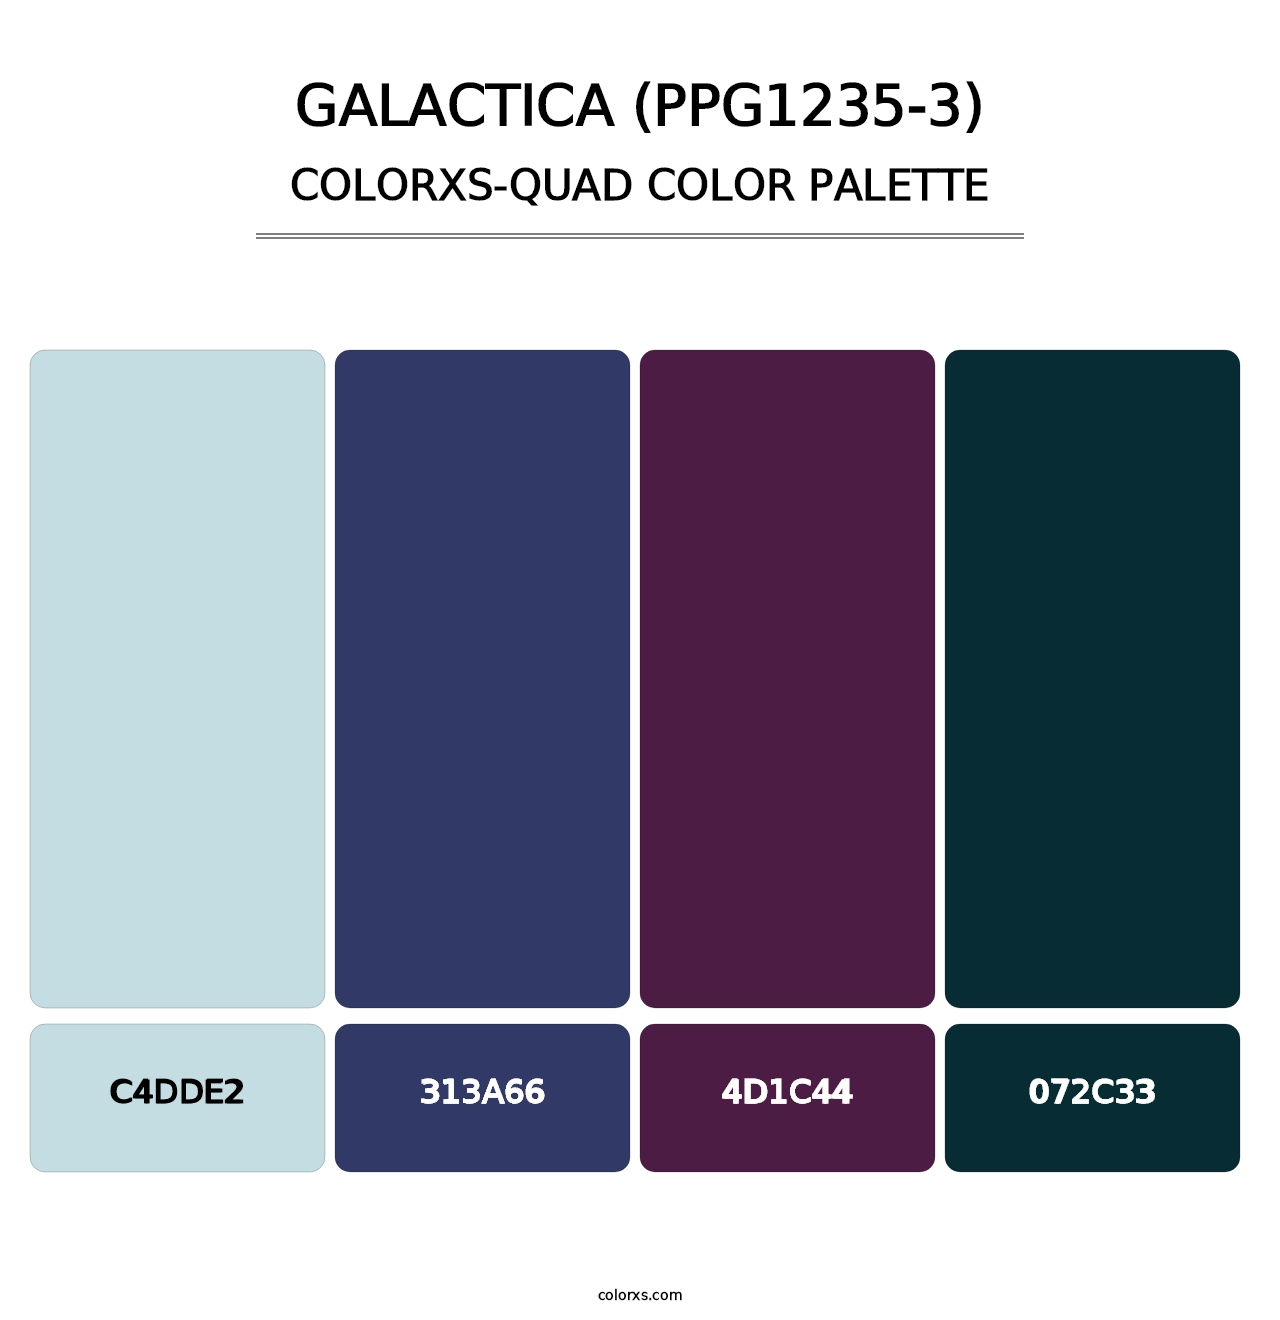 Galactica (PPG1235-3) - Colorxs Quad Palette